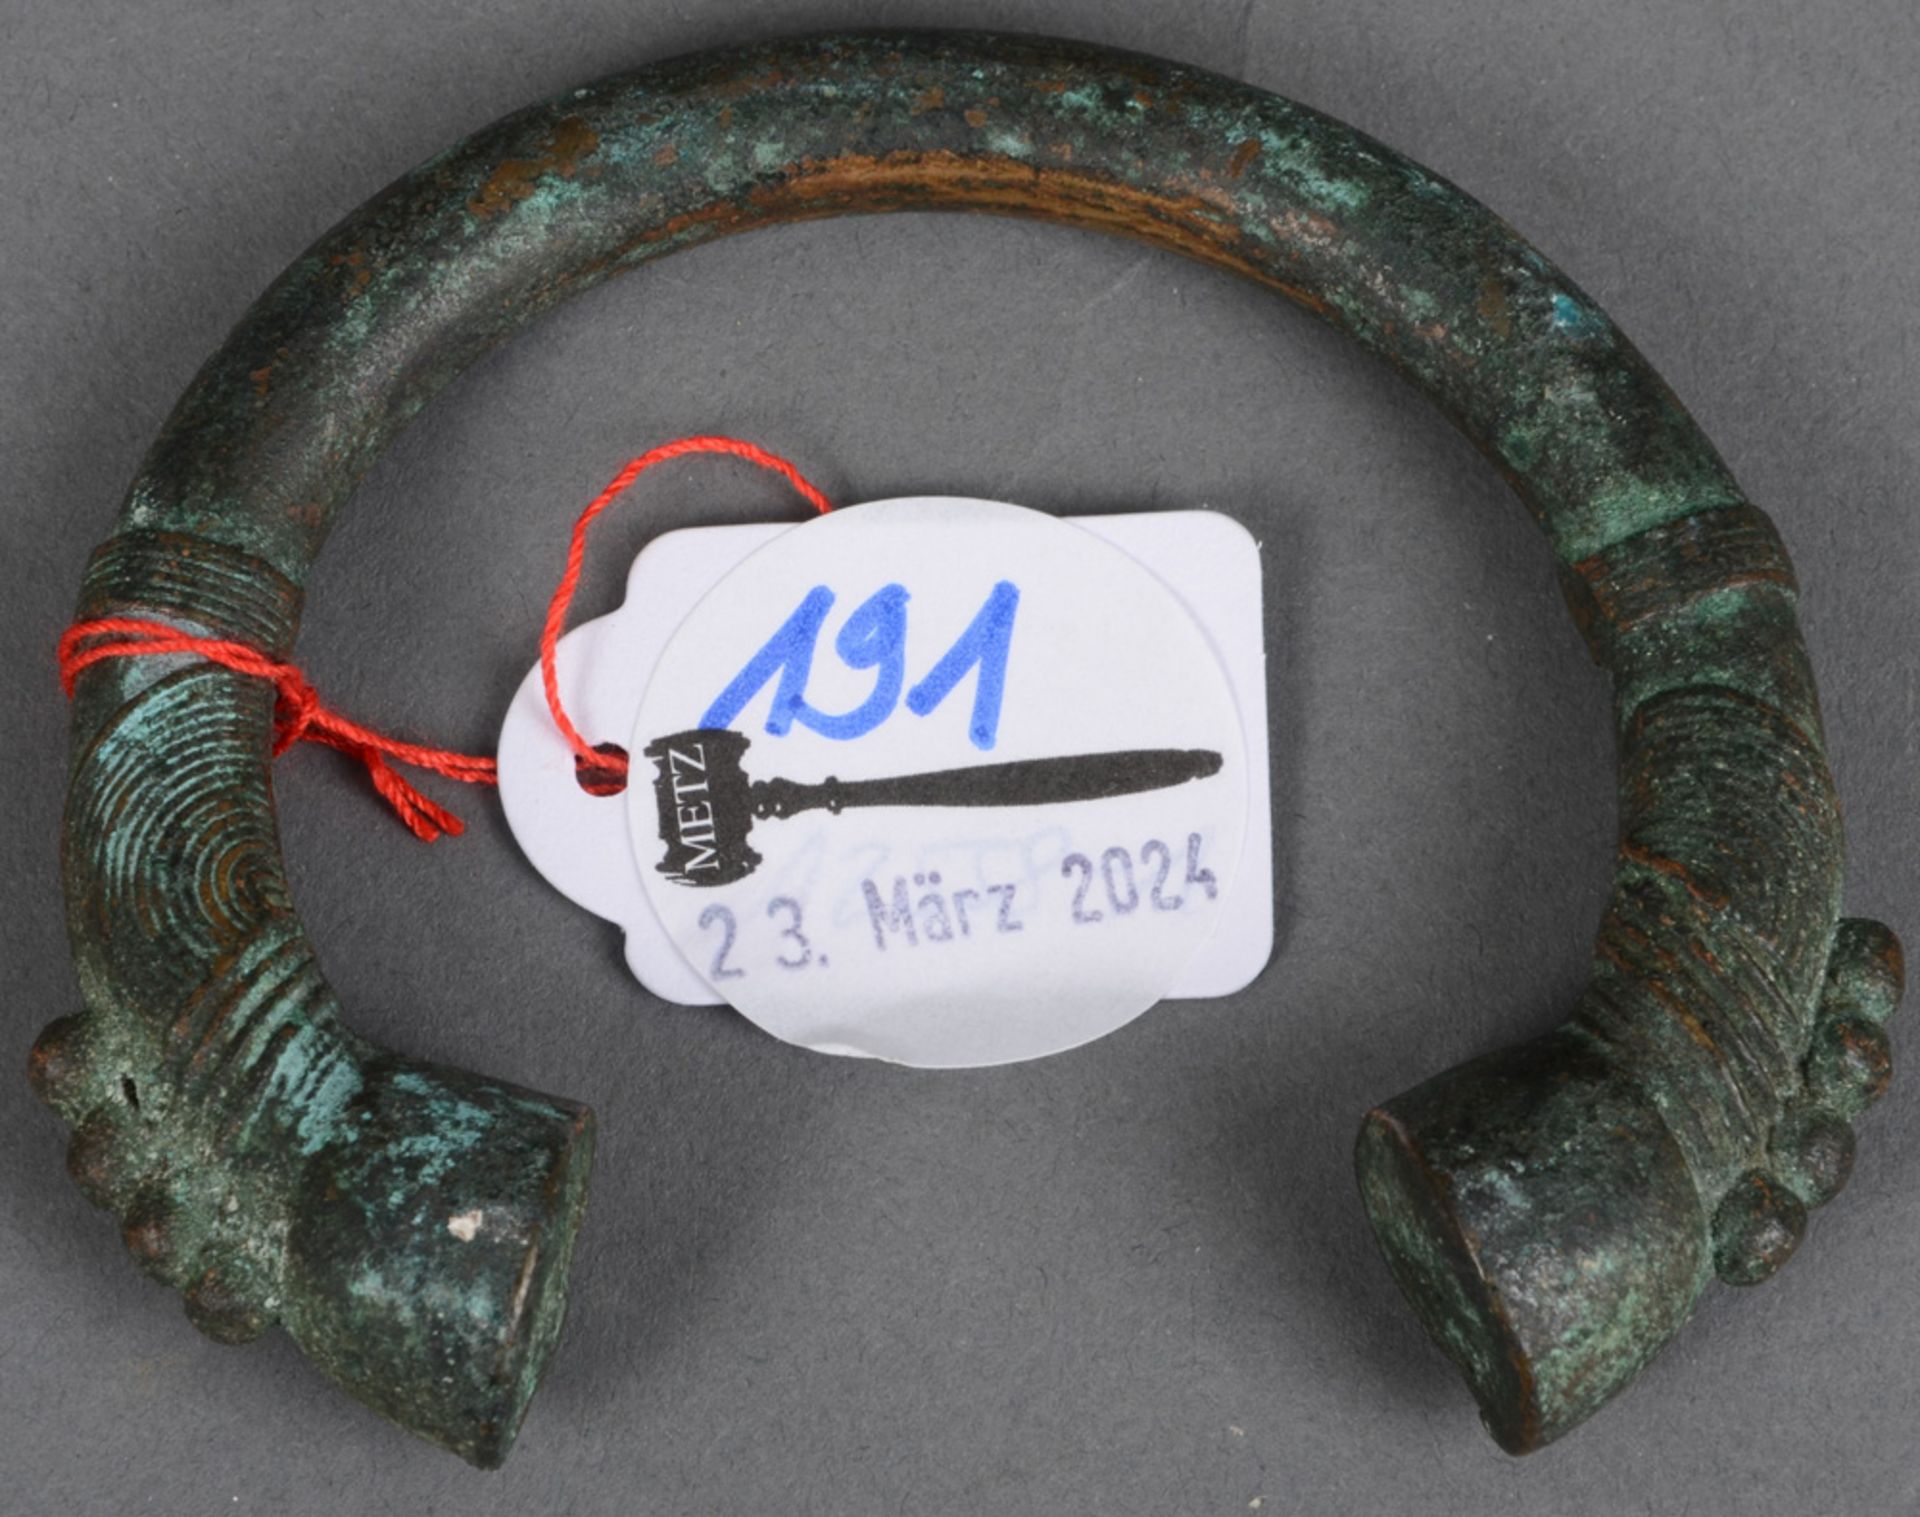 Armreif mit Pferdehuf-Endstücken. Wohl spätrömisch 4./5. Jh. n. Chr. Bronze, H=7,5 cm, B=8,7 cm.